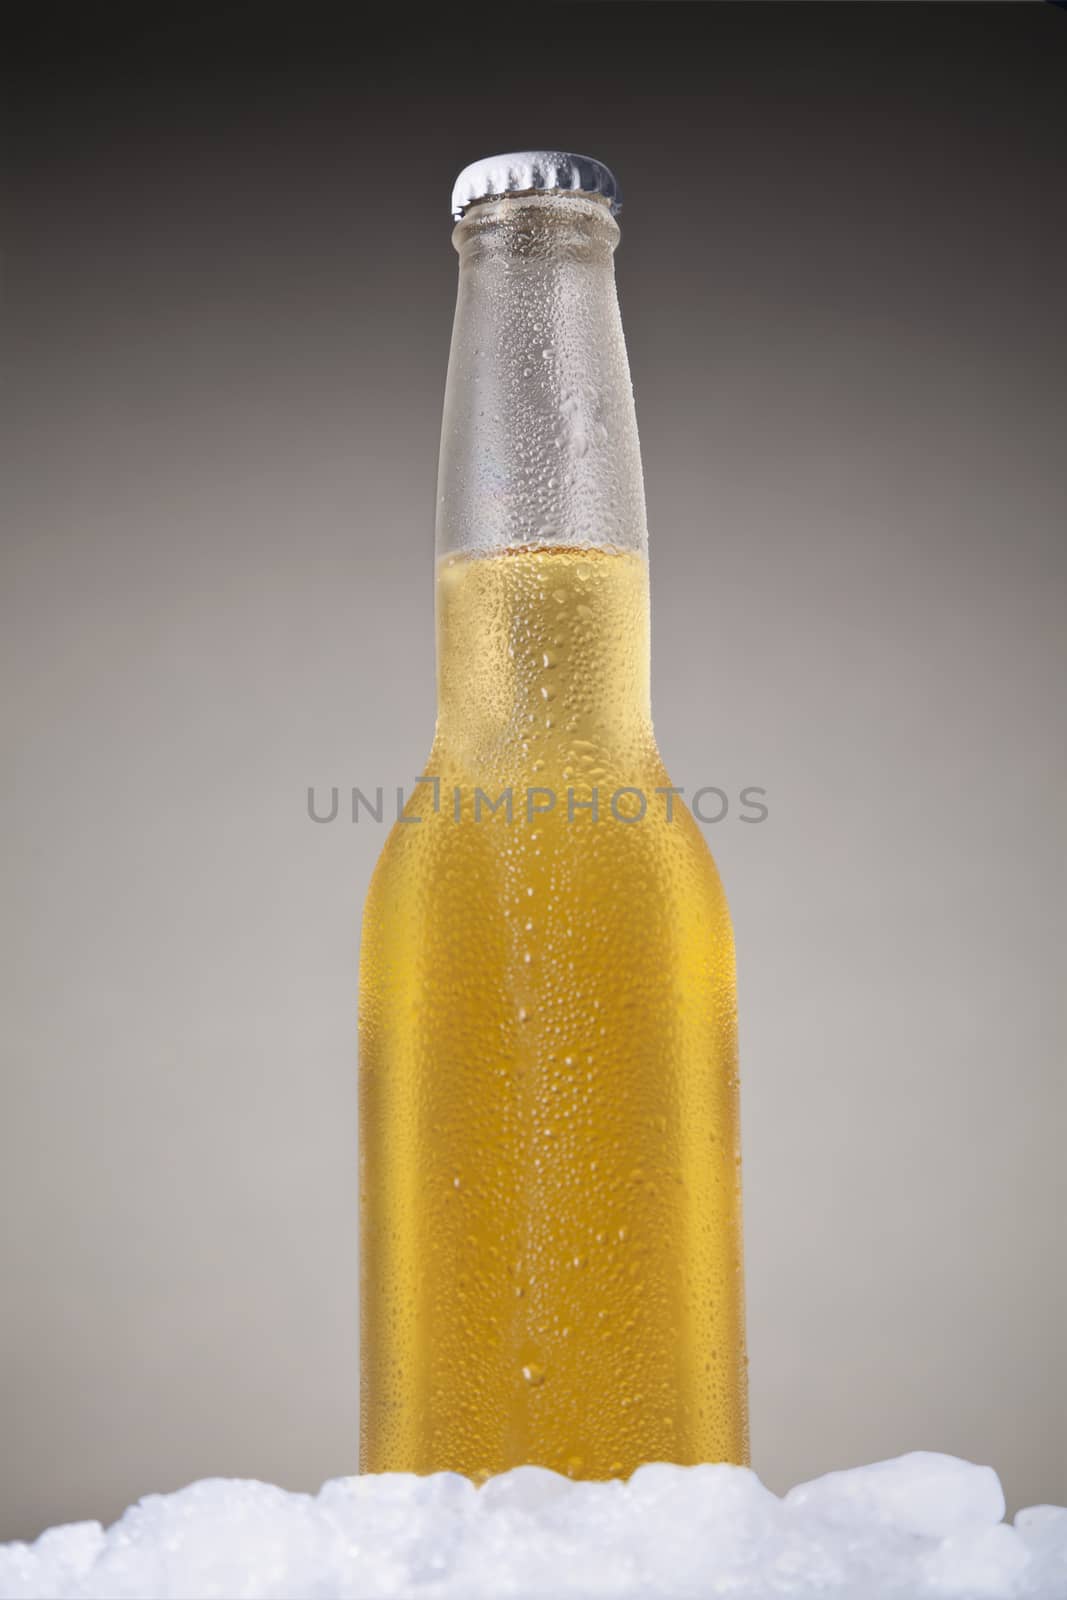 Beer bottle by antonprado